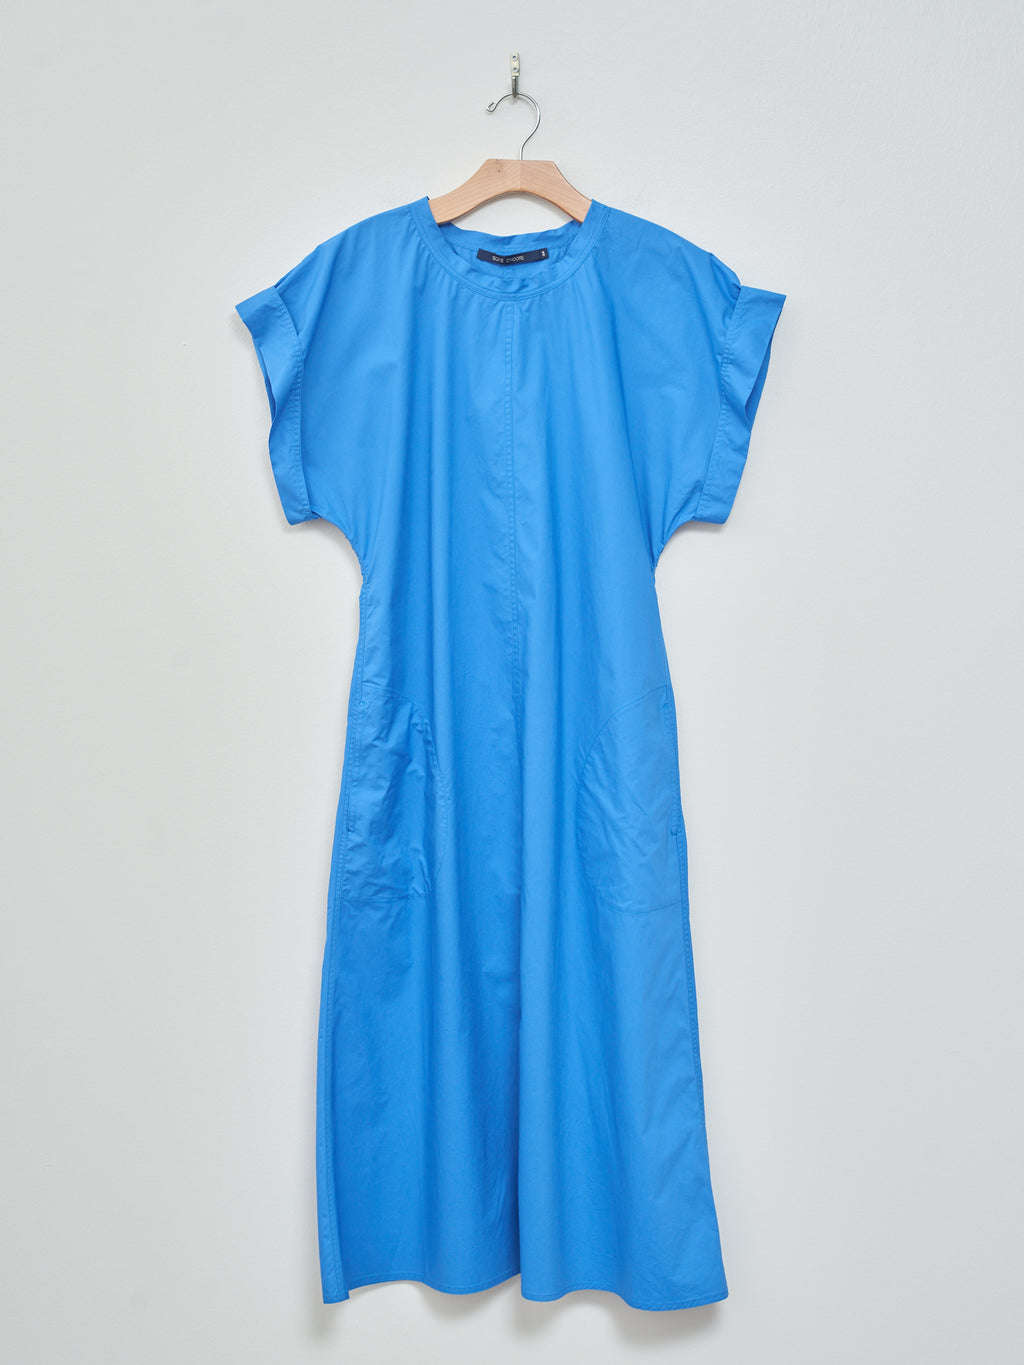 Namu Shop - Sofie D'hoore Ducie Dress - Bluette